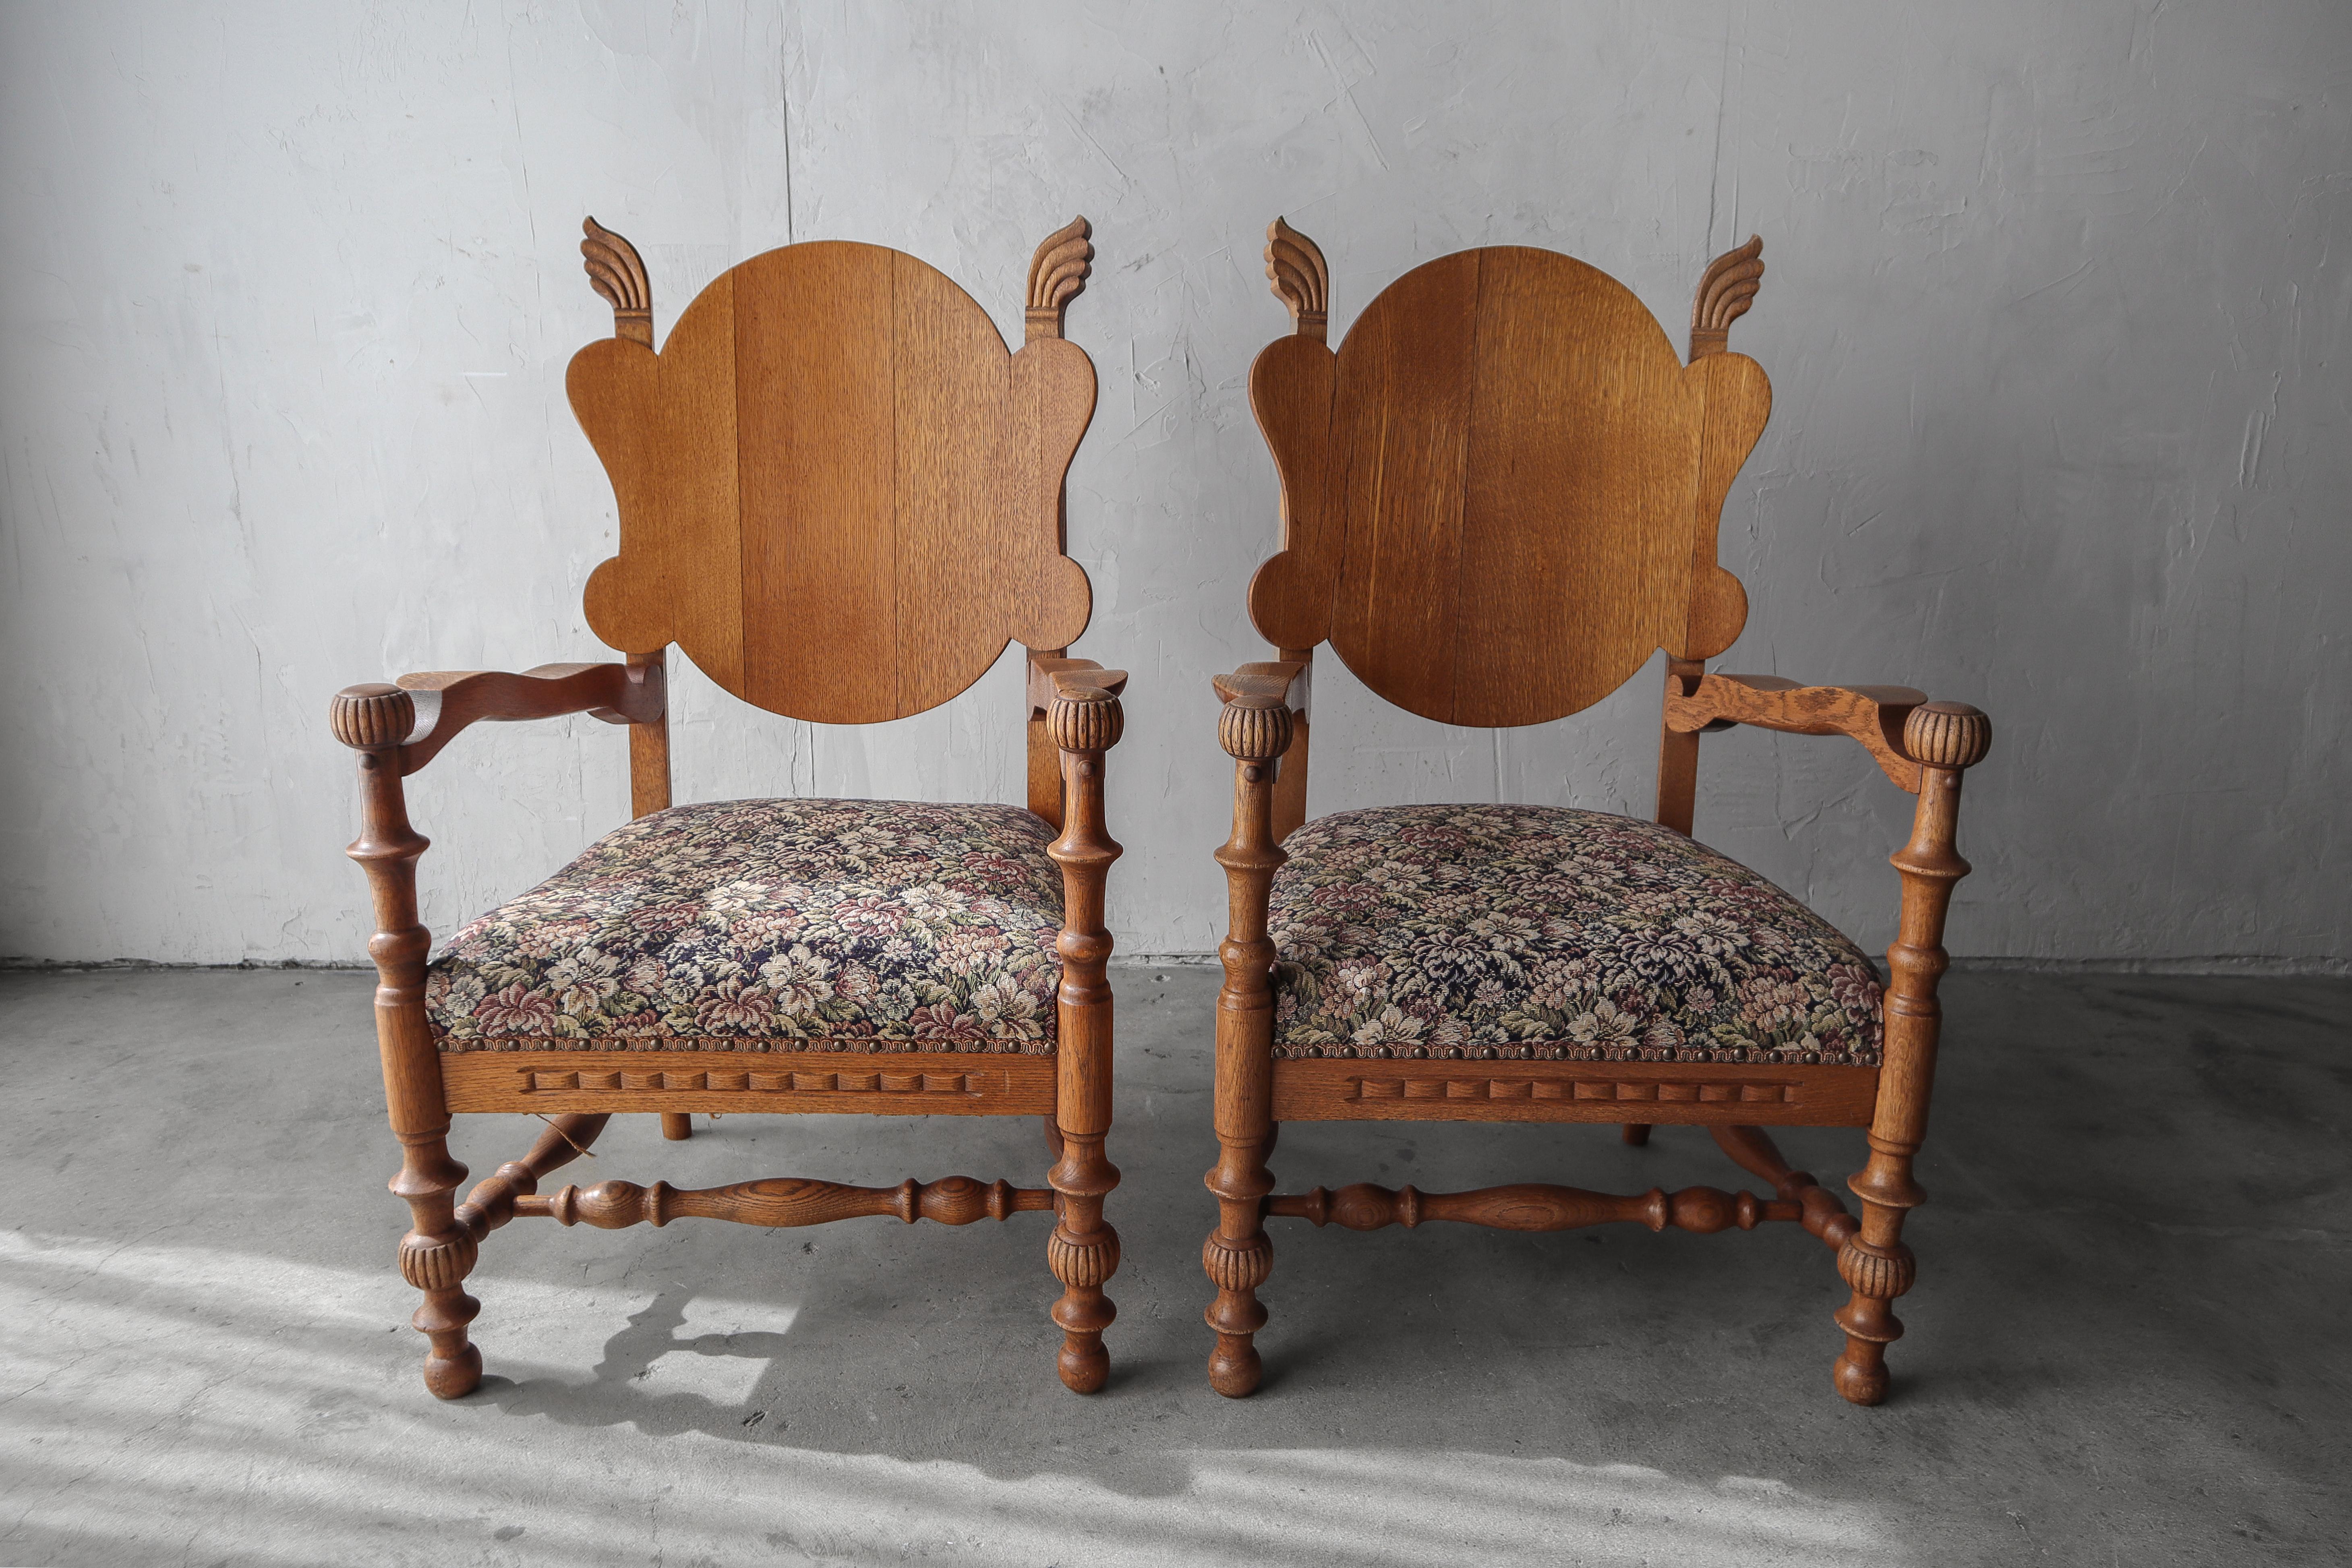 Unglaubliches Beispiel für antike geschnitzte Eichenstühle.  Diese Stühle haben wunderschöne geschnitzte Details, gebogene Rückenlehnen aus Eichenschichtholz und originale Sitze mit Blumentapeten.  Diese sind meiner Meinung nach der Inbegriff von